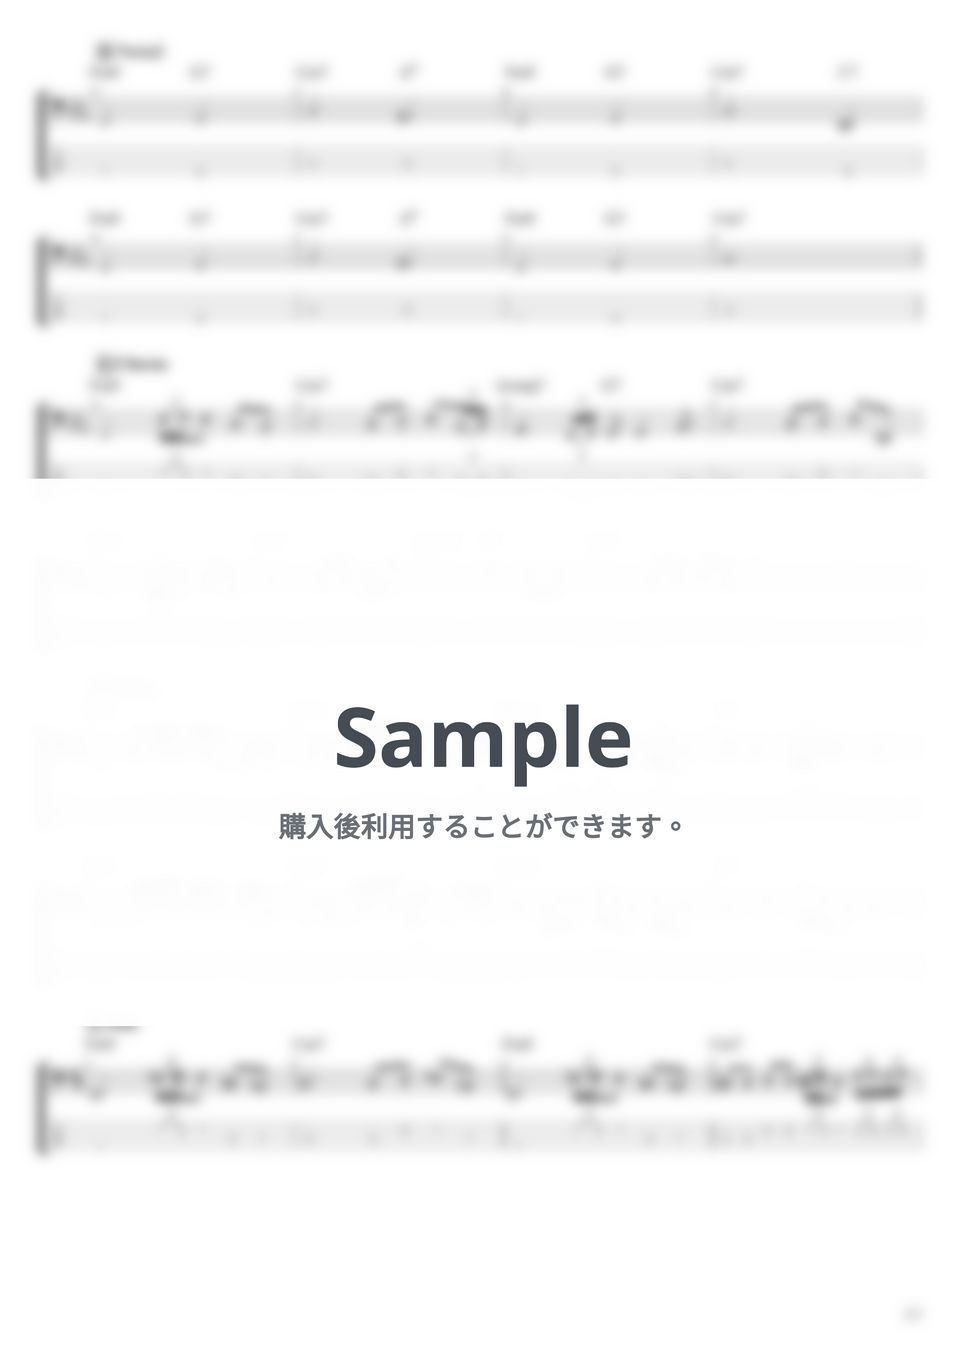 King Gnu - 硝子窓 (ベース Tab譜 4弦) by T's bass score